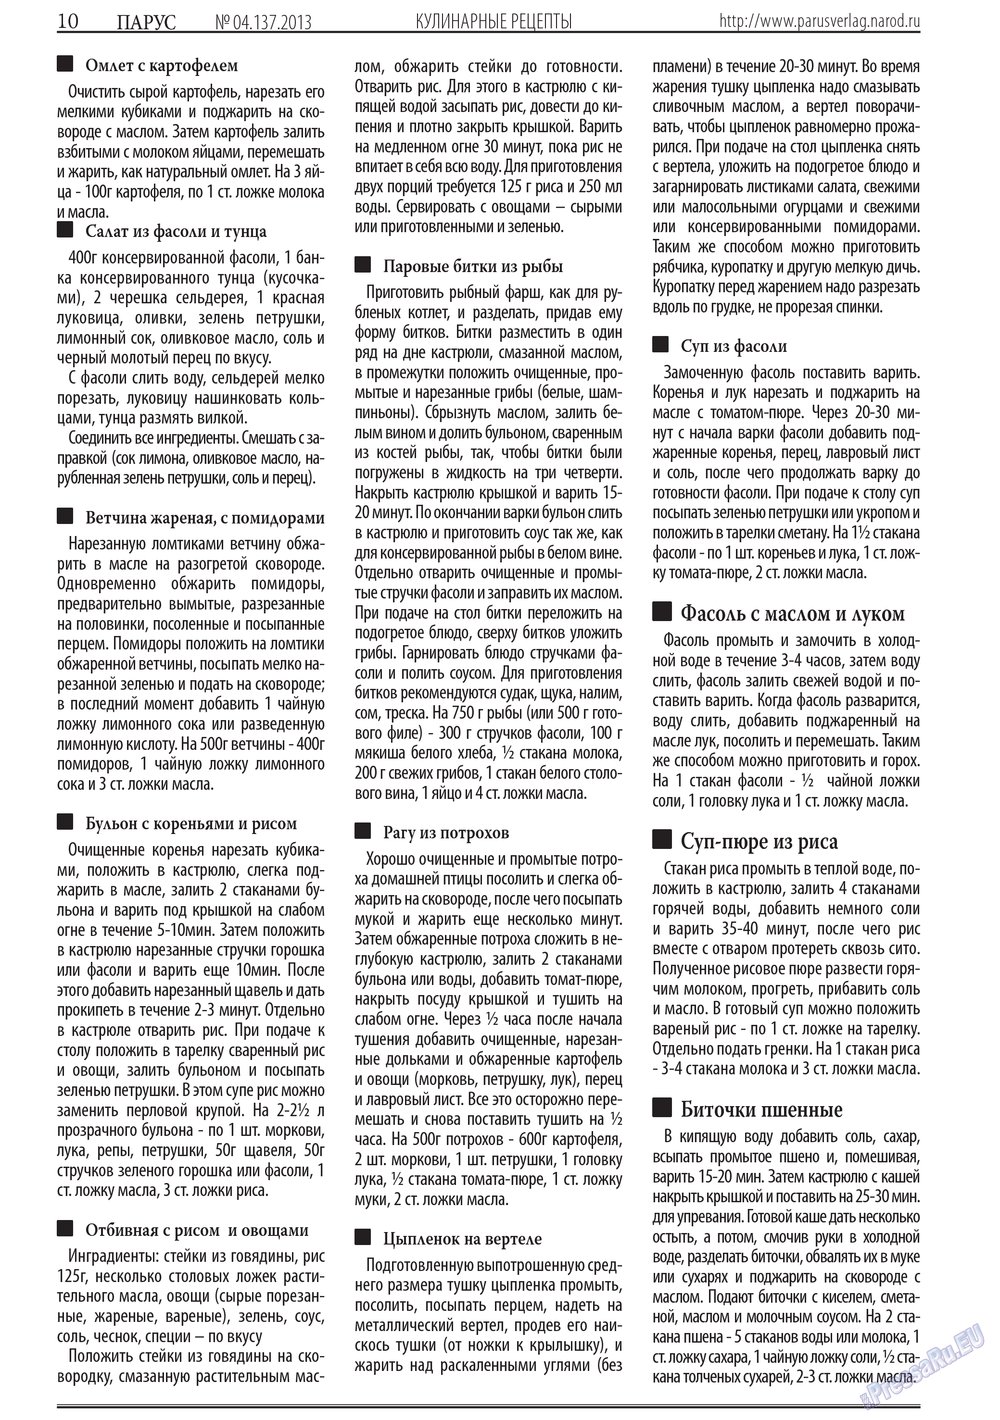 Парус (газета). 2013 год, номер 4, стр. 10